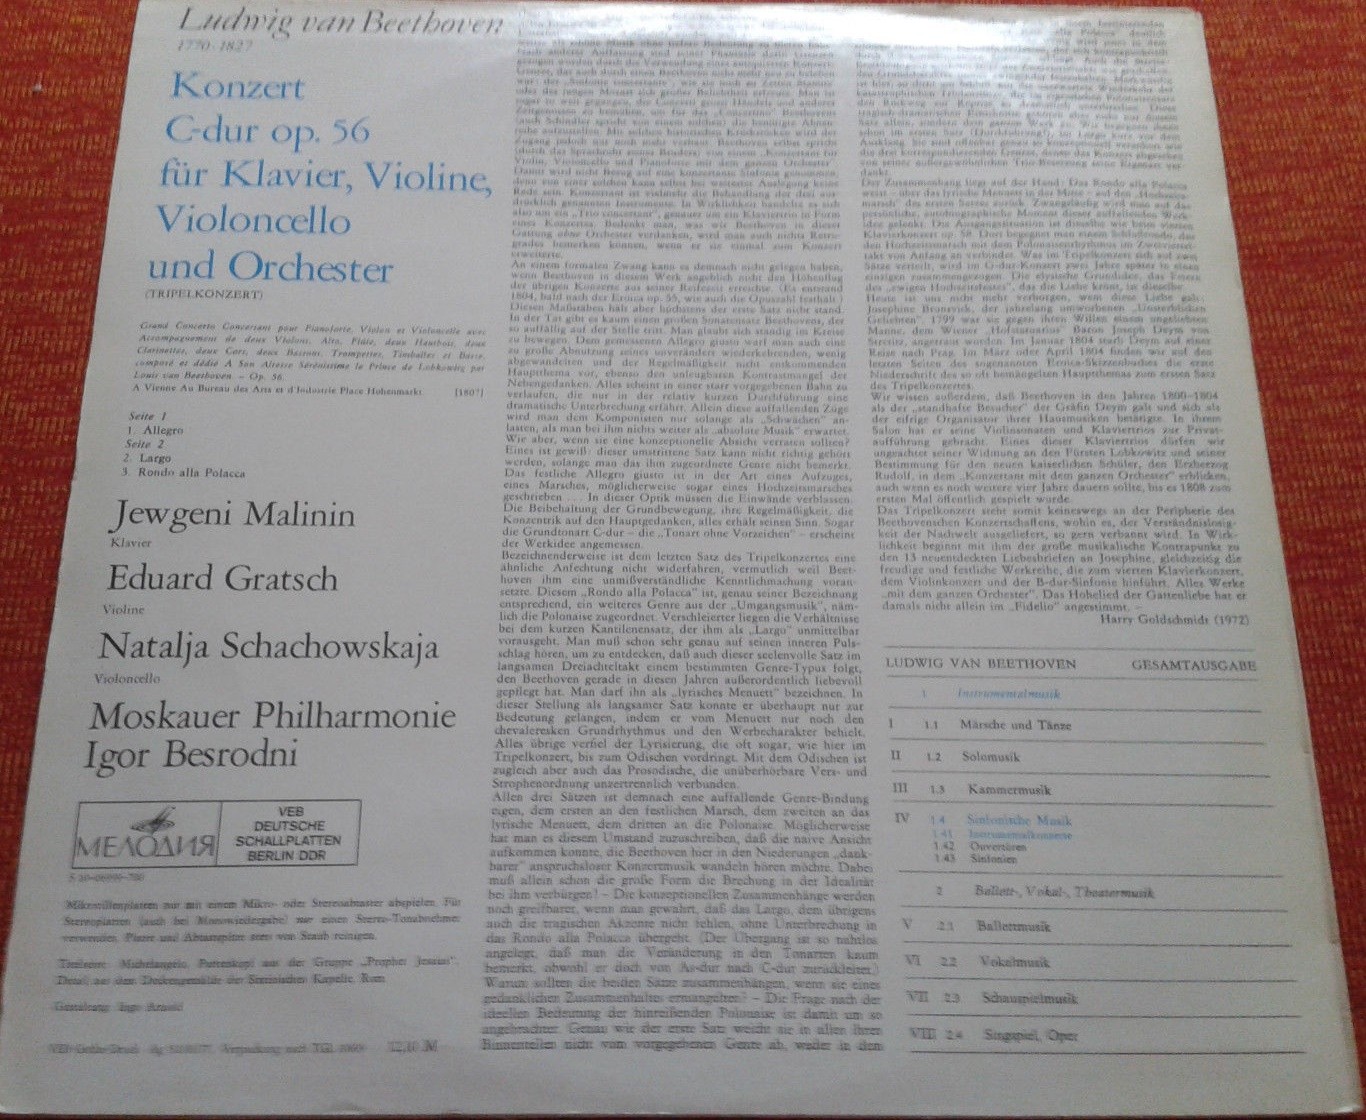 Л. БЕТХОВЕН (1770-1827) Концерт для ф-но, скрипки и виолончели с оркестром до мажор, соч. 56